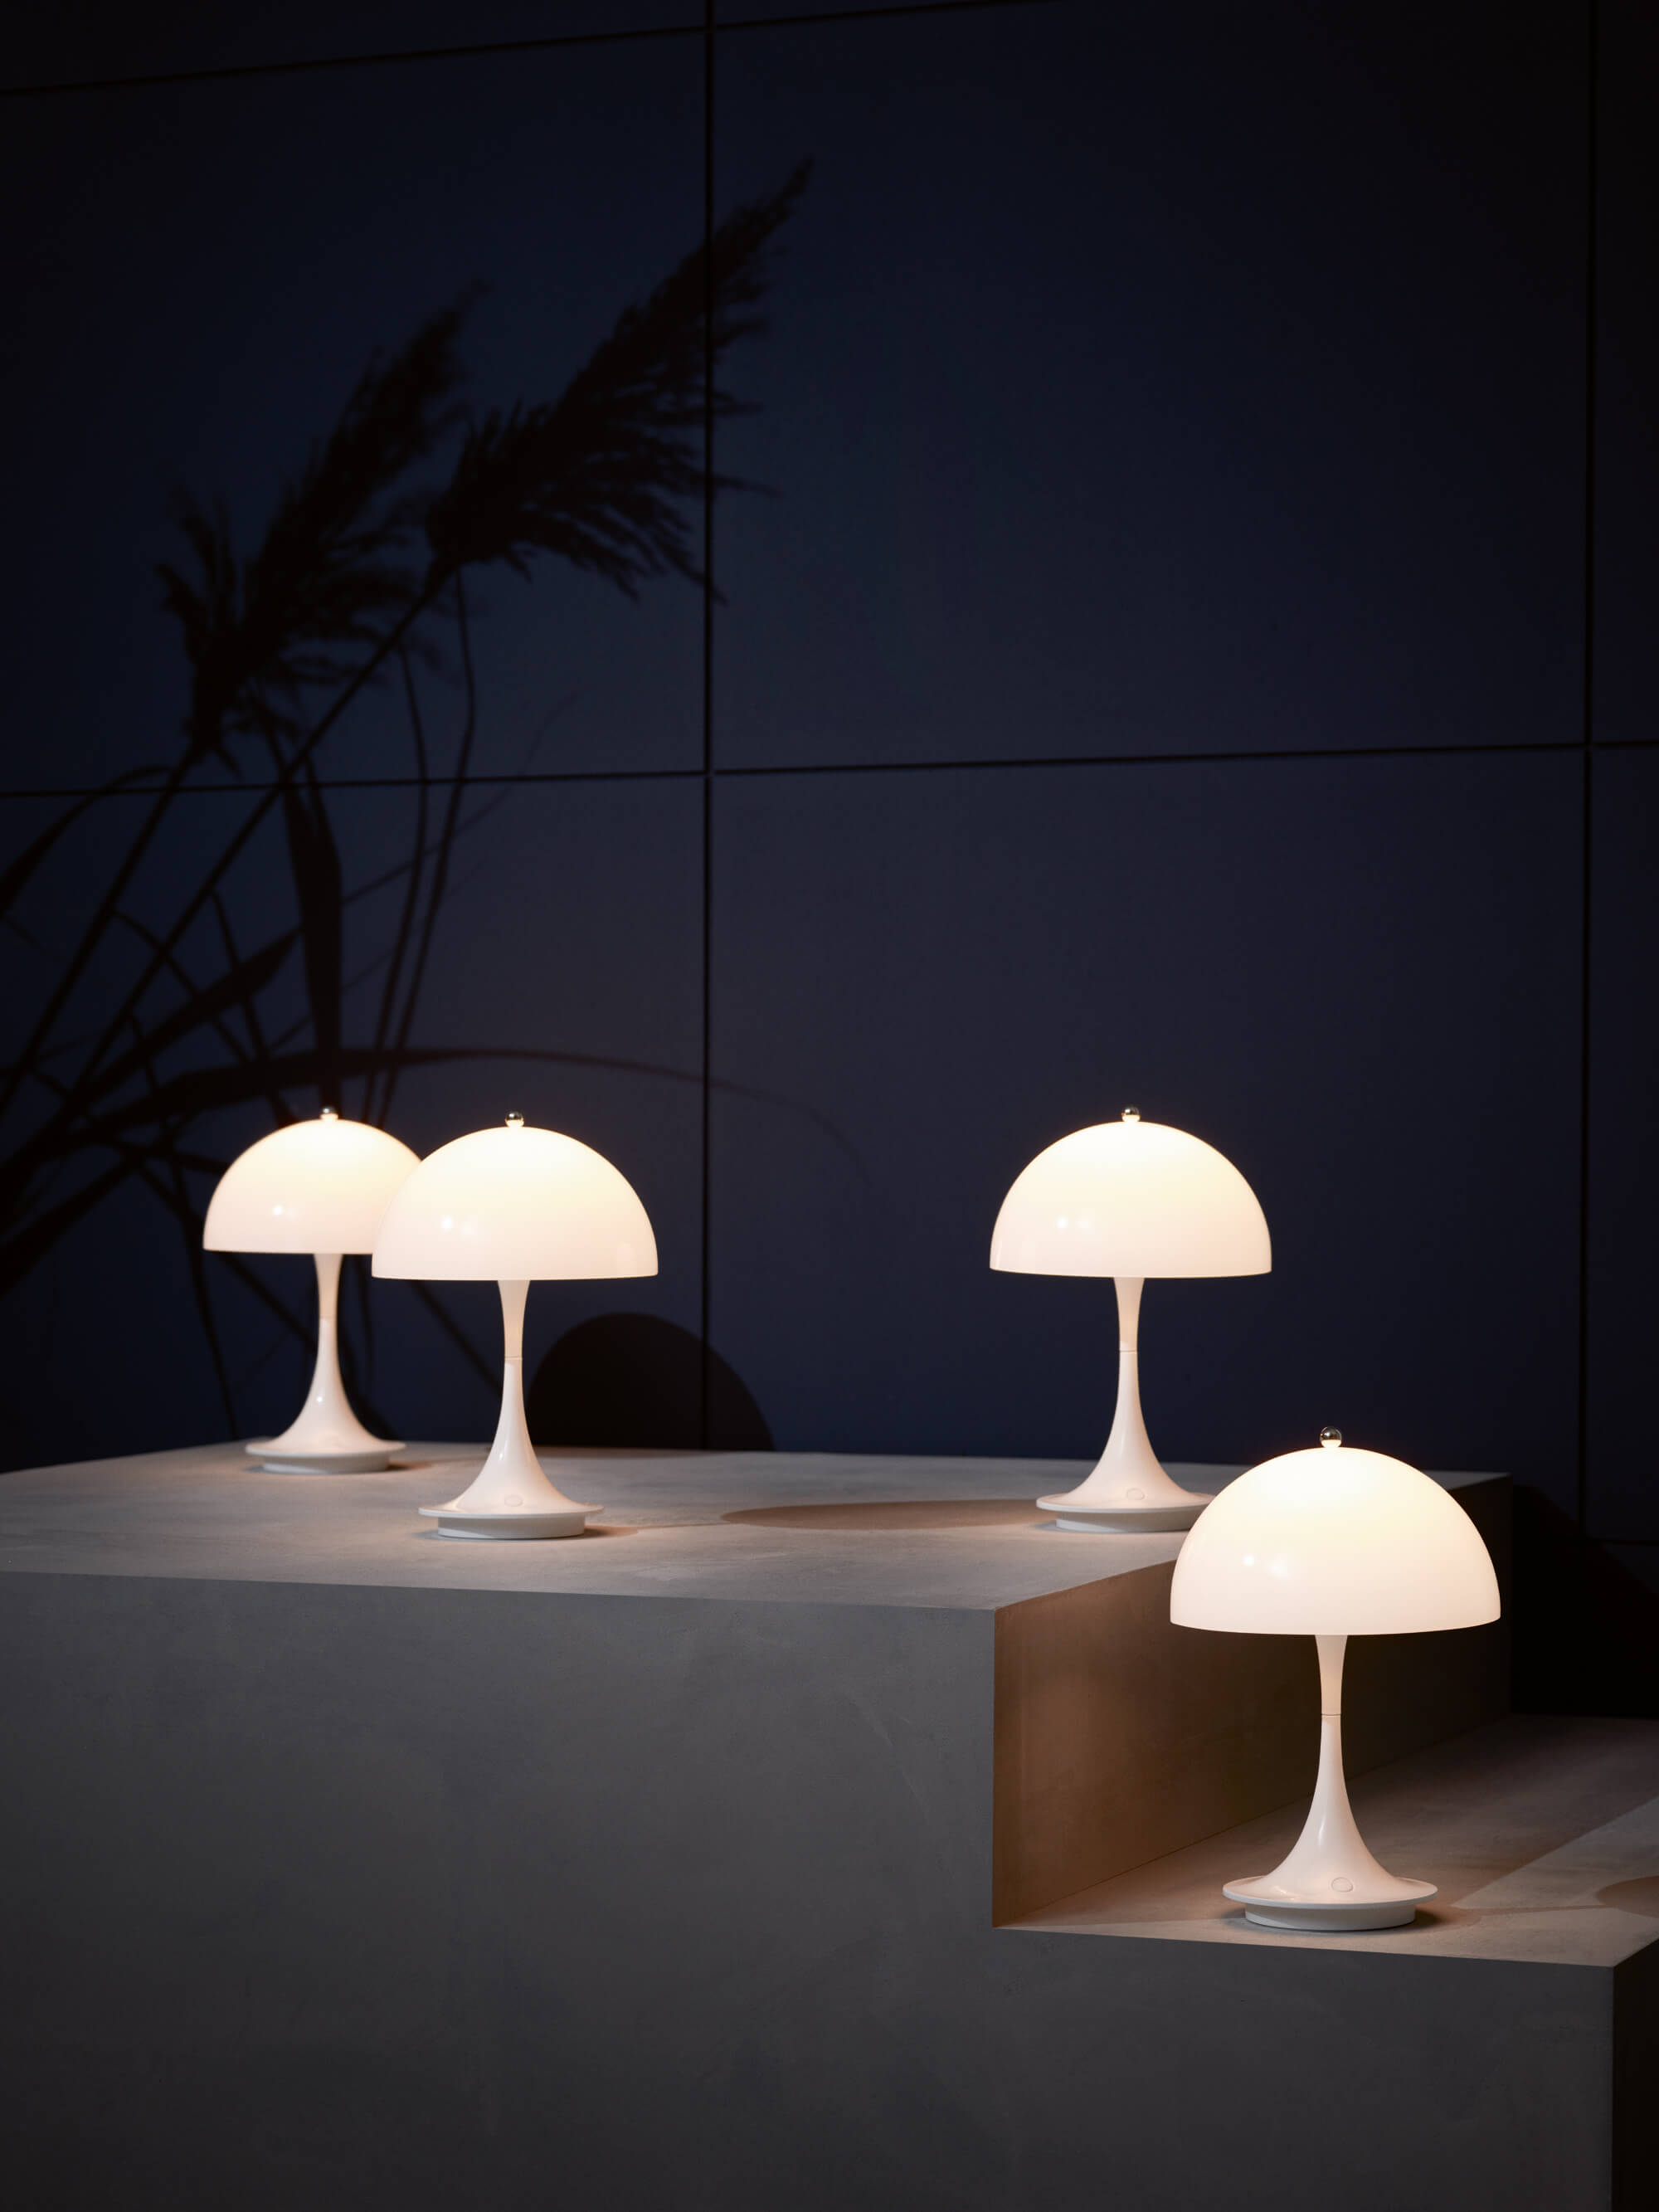 a group of mushroom shaped lights